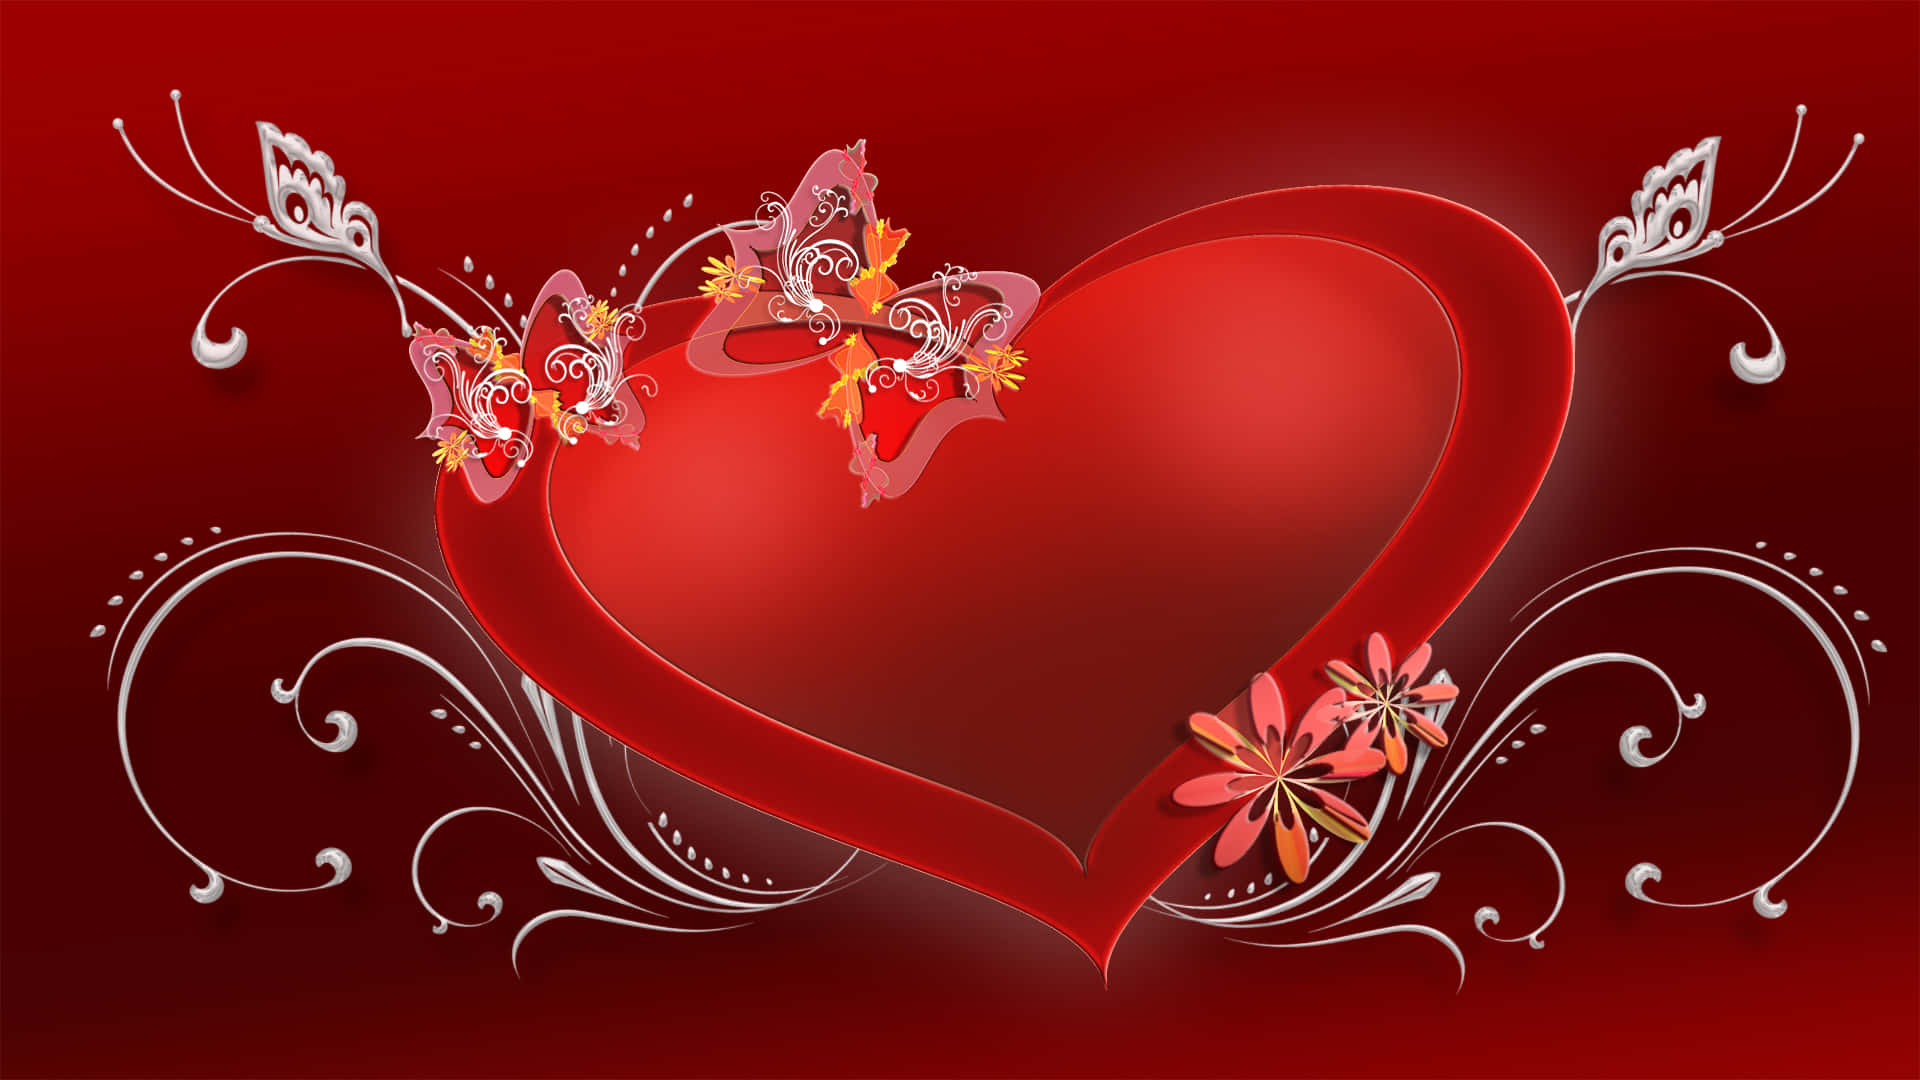 Muestratu Amor Con Un Hermoso Fondo De Alta Resolución Para El Día De San Valentín.